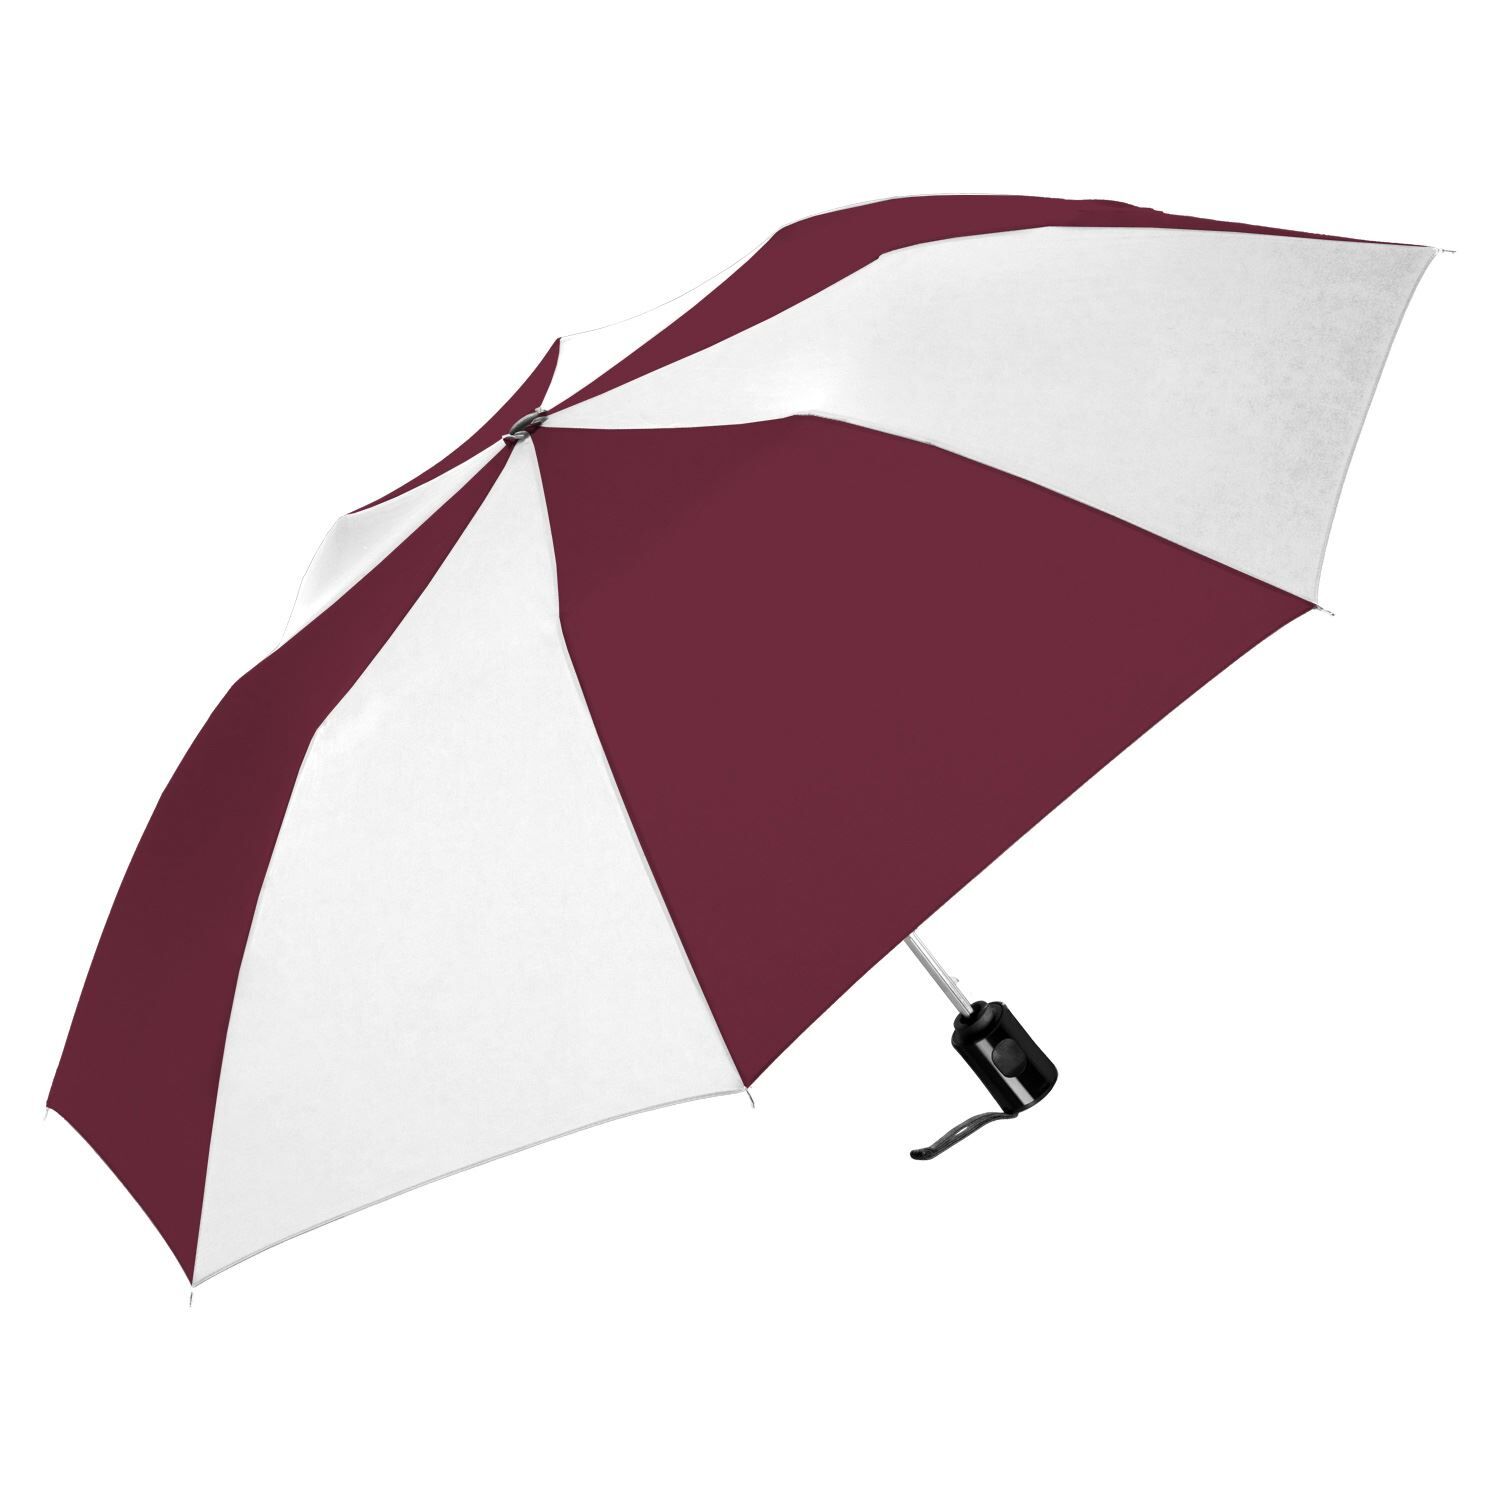 Custom Branded ShedRain Umbrellas - Burgundy/white